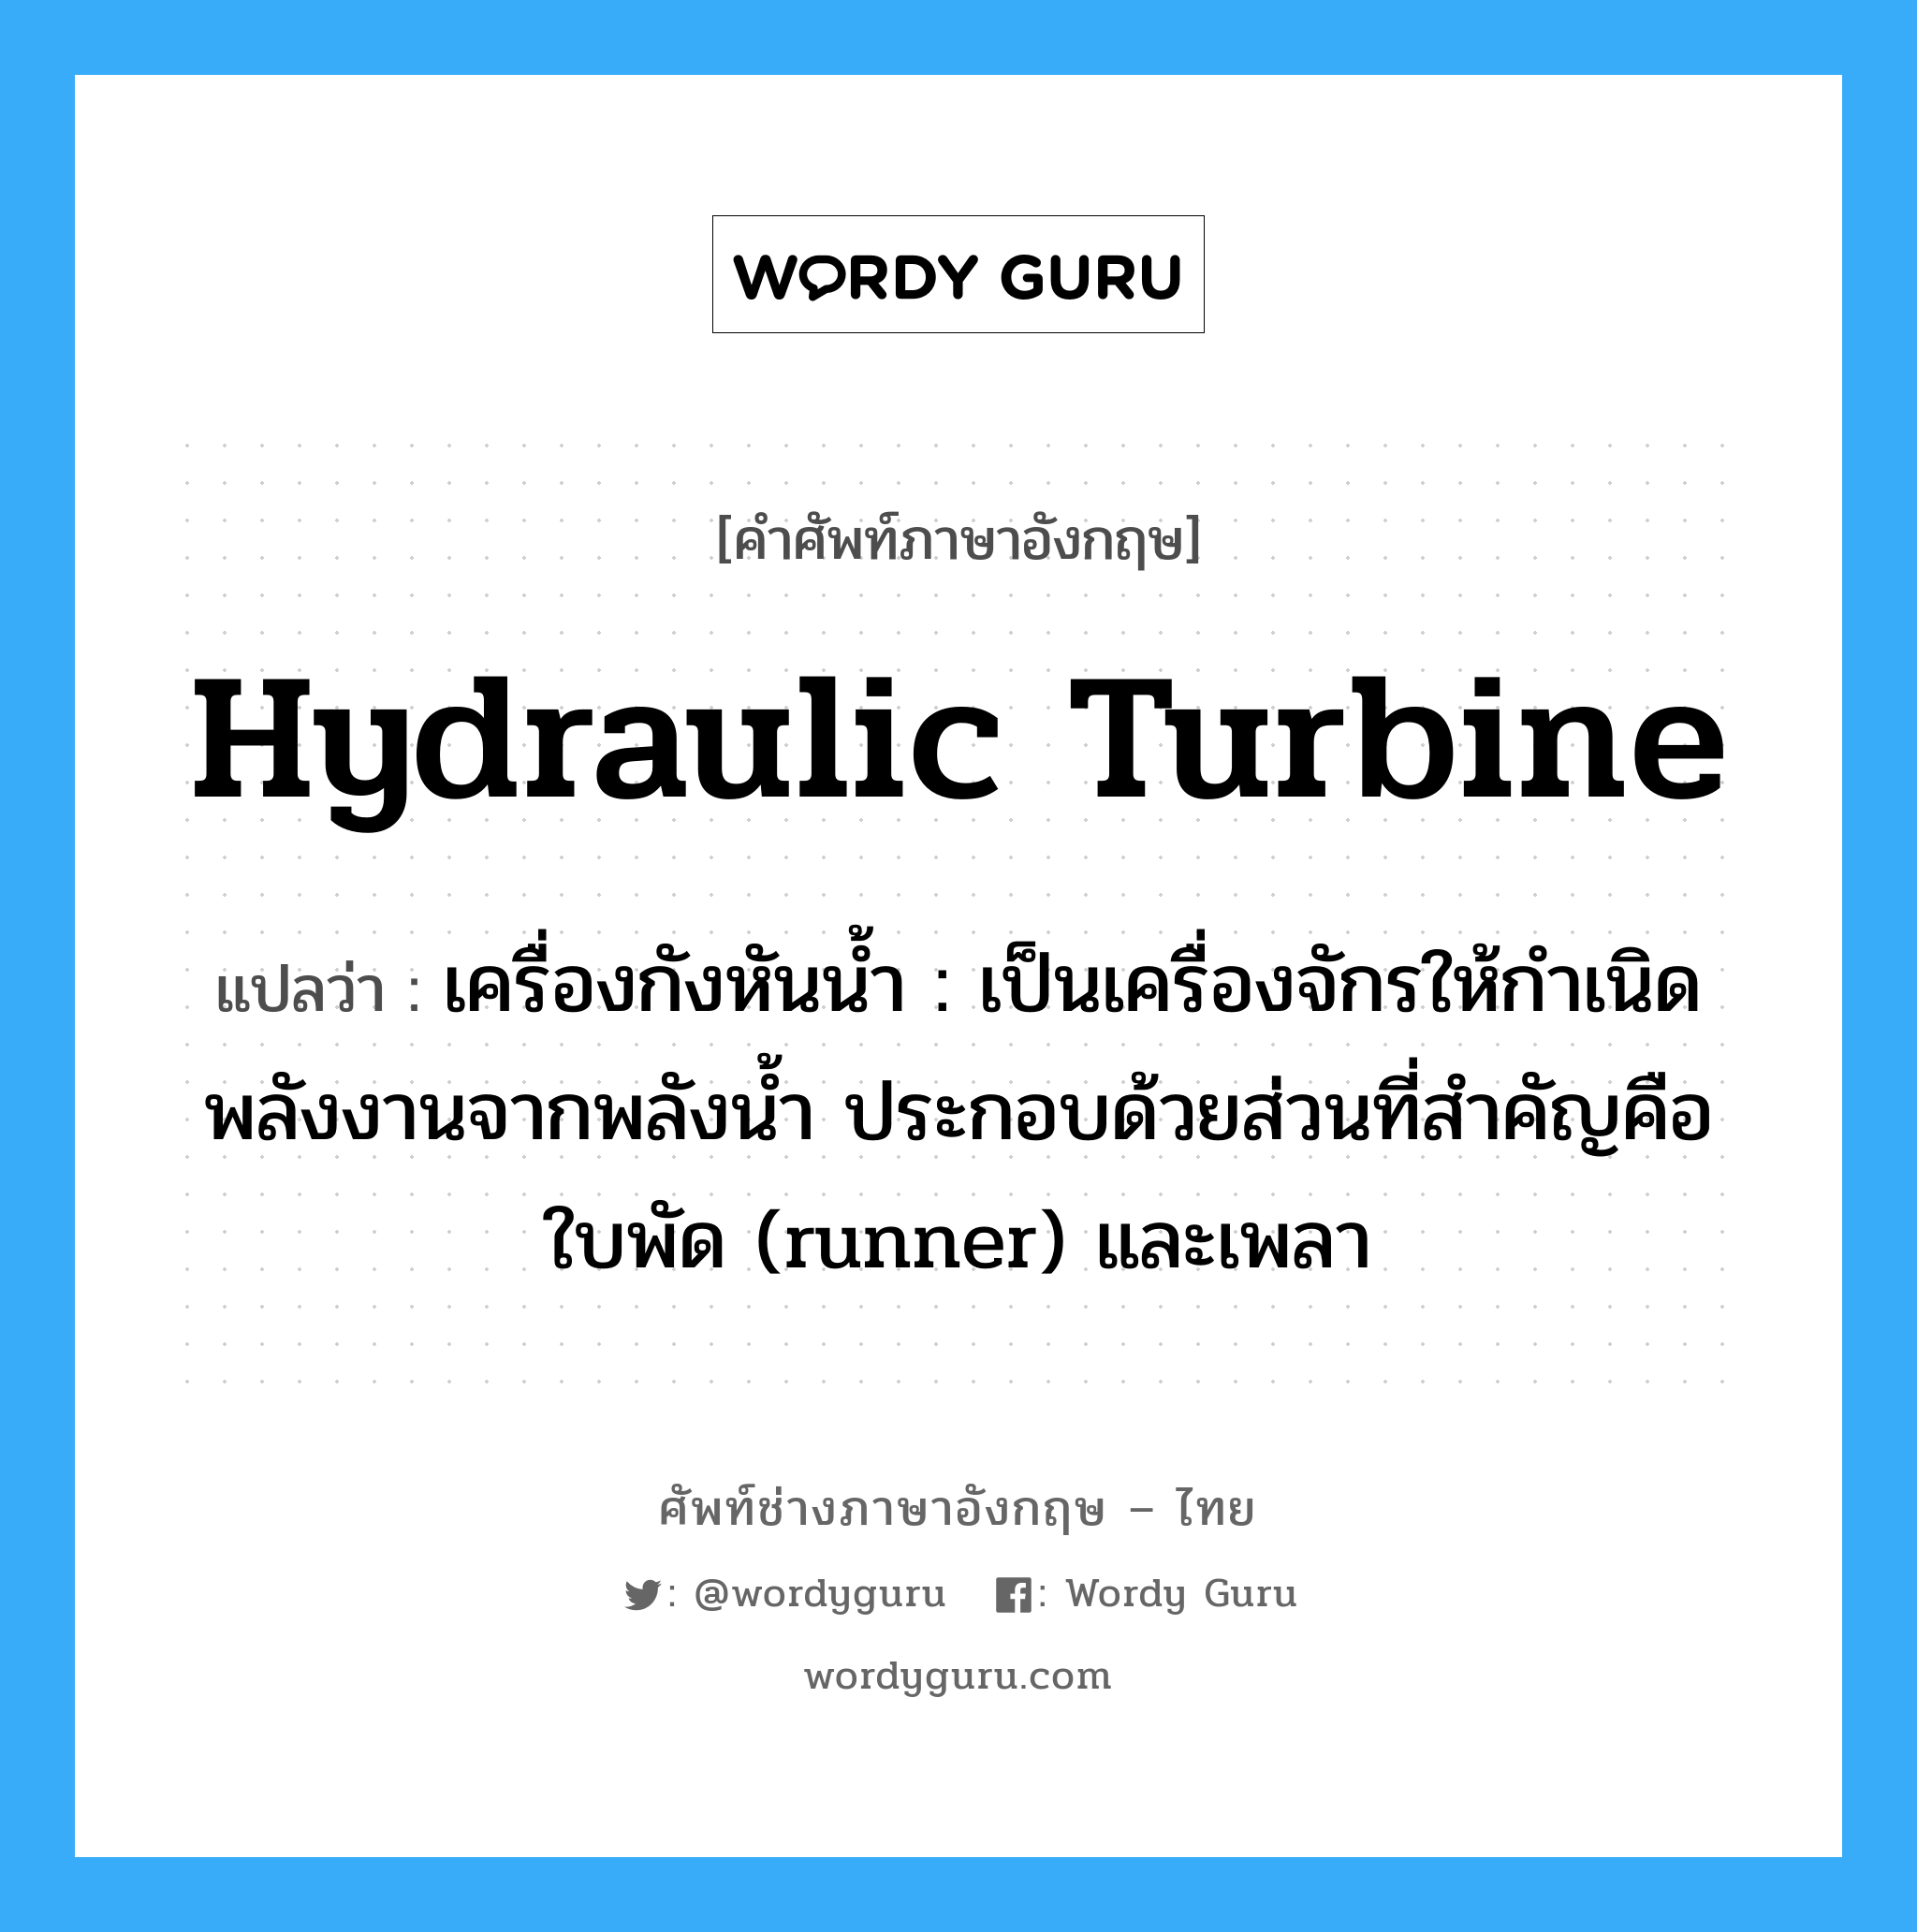 hydraulic turbine แปลว่า?, คำศัพท์ช่างภาษาอังกฤษ - ไทย hydraulic turbine คำศัพท์ภาษาอังกฤษ hydraulic turbine แปลว่า เครื่องกังหันน้ำ : เป็นเครื่องจักรให้กำเนิดพลังงานจากพลังน้ำ ประกอบด้วยส่วนที่สำคัญคือ ใบพัด (runner) และเพลา